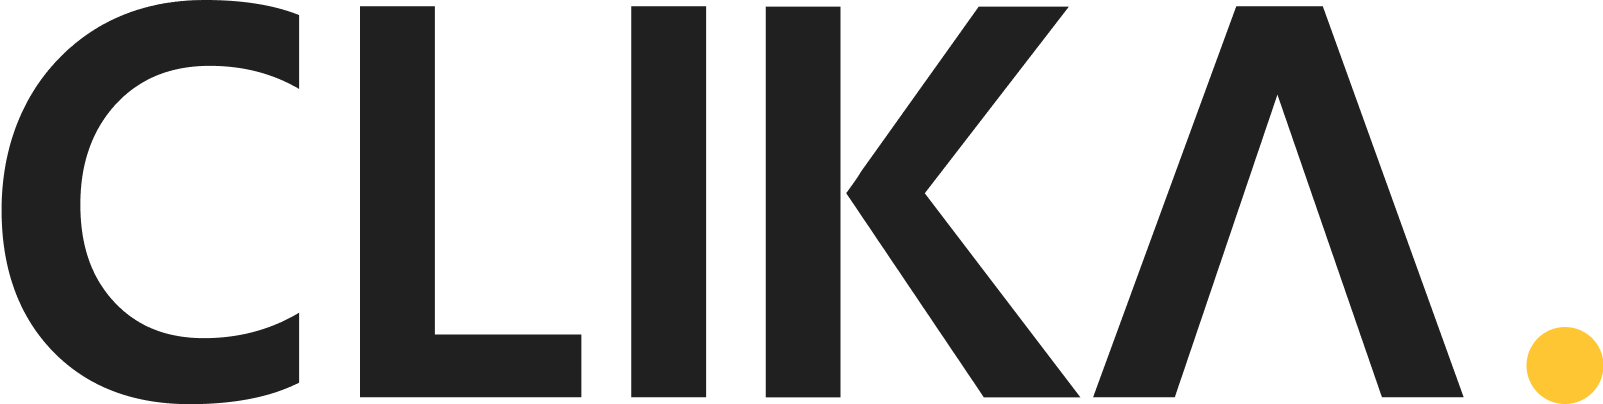 클리카/ CLIKA Logo